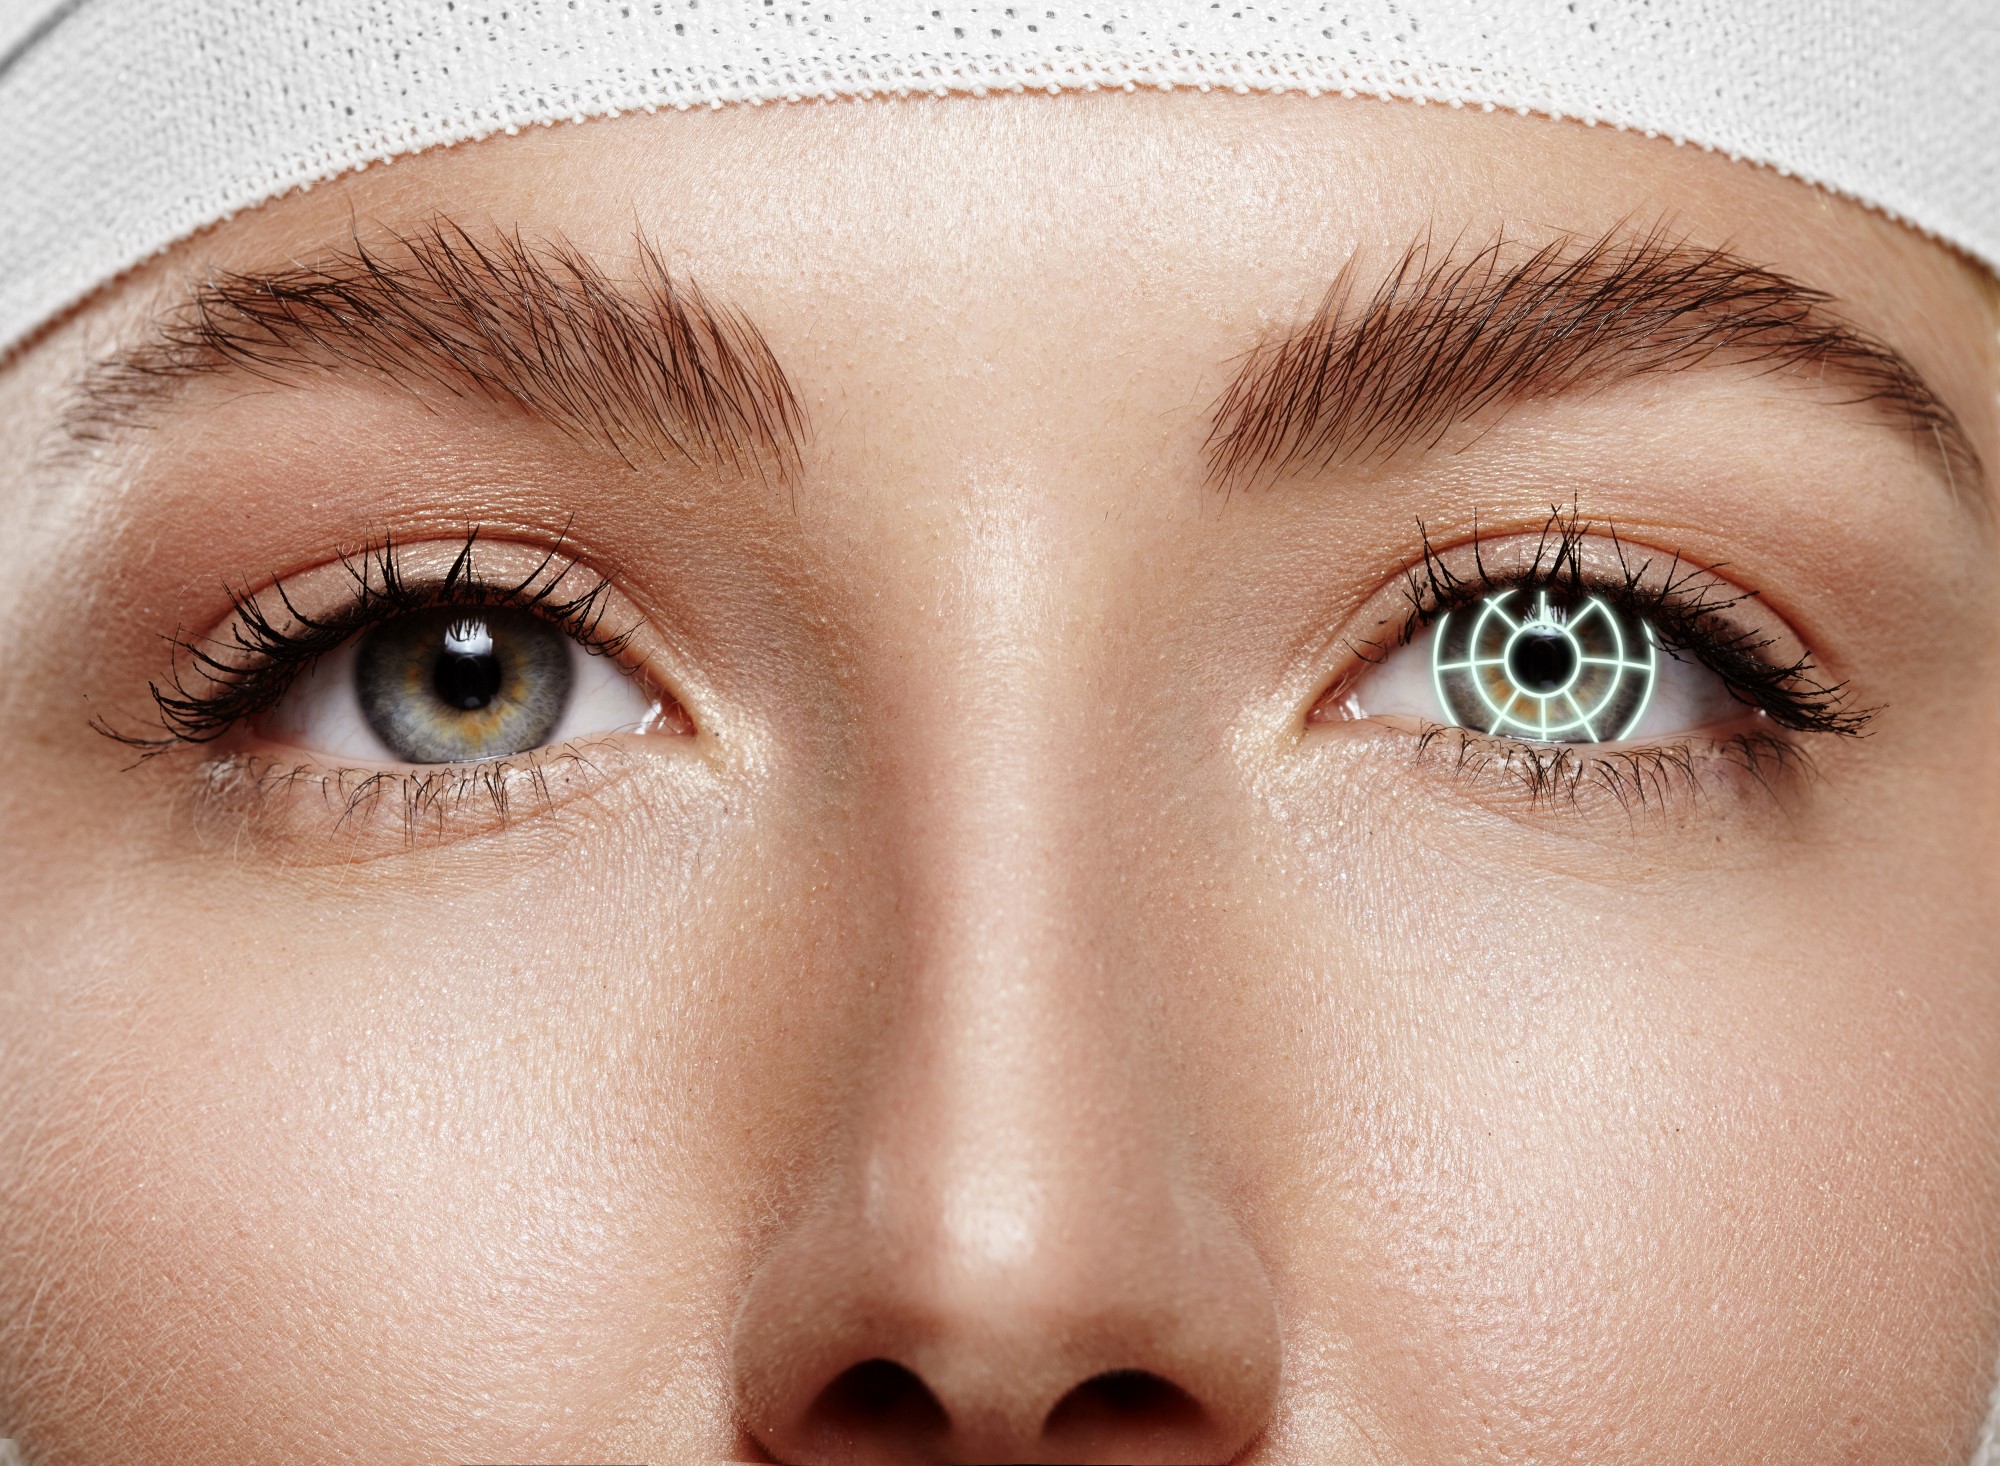 כל מה שצריך לדעת על ניתוח לייזר בעיניים